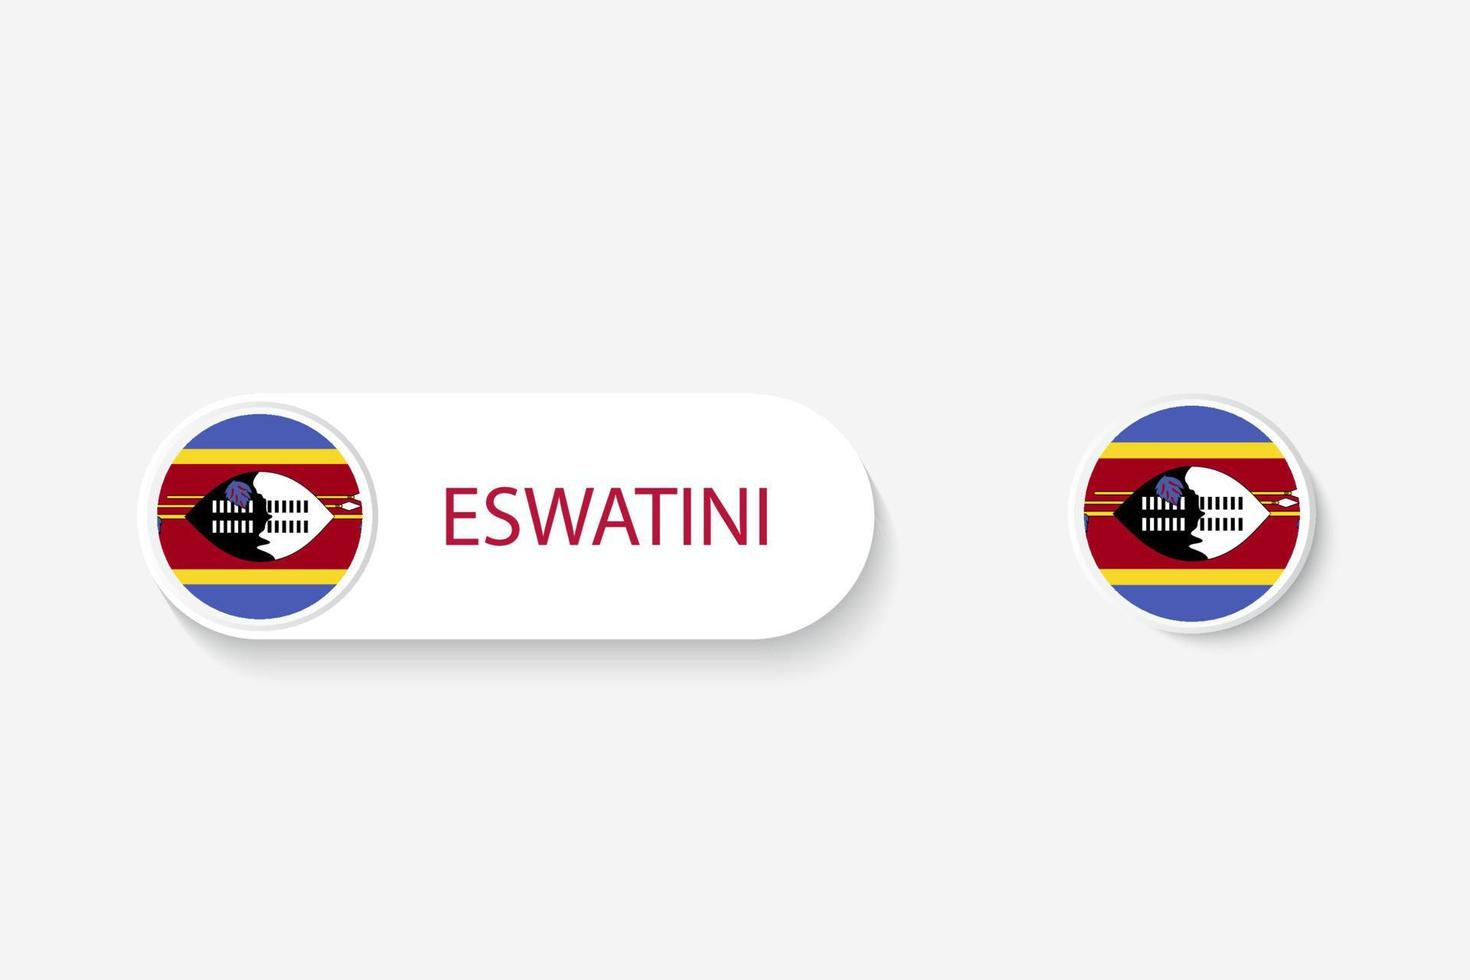 bandeira de botão eswatini na ilustração de forma oval com a palavra de eswatini. e botão bandeira eswatini. vetor